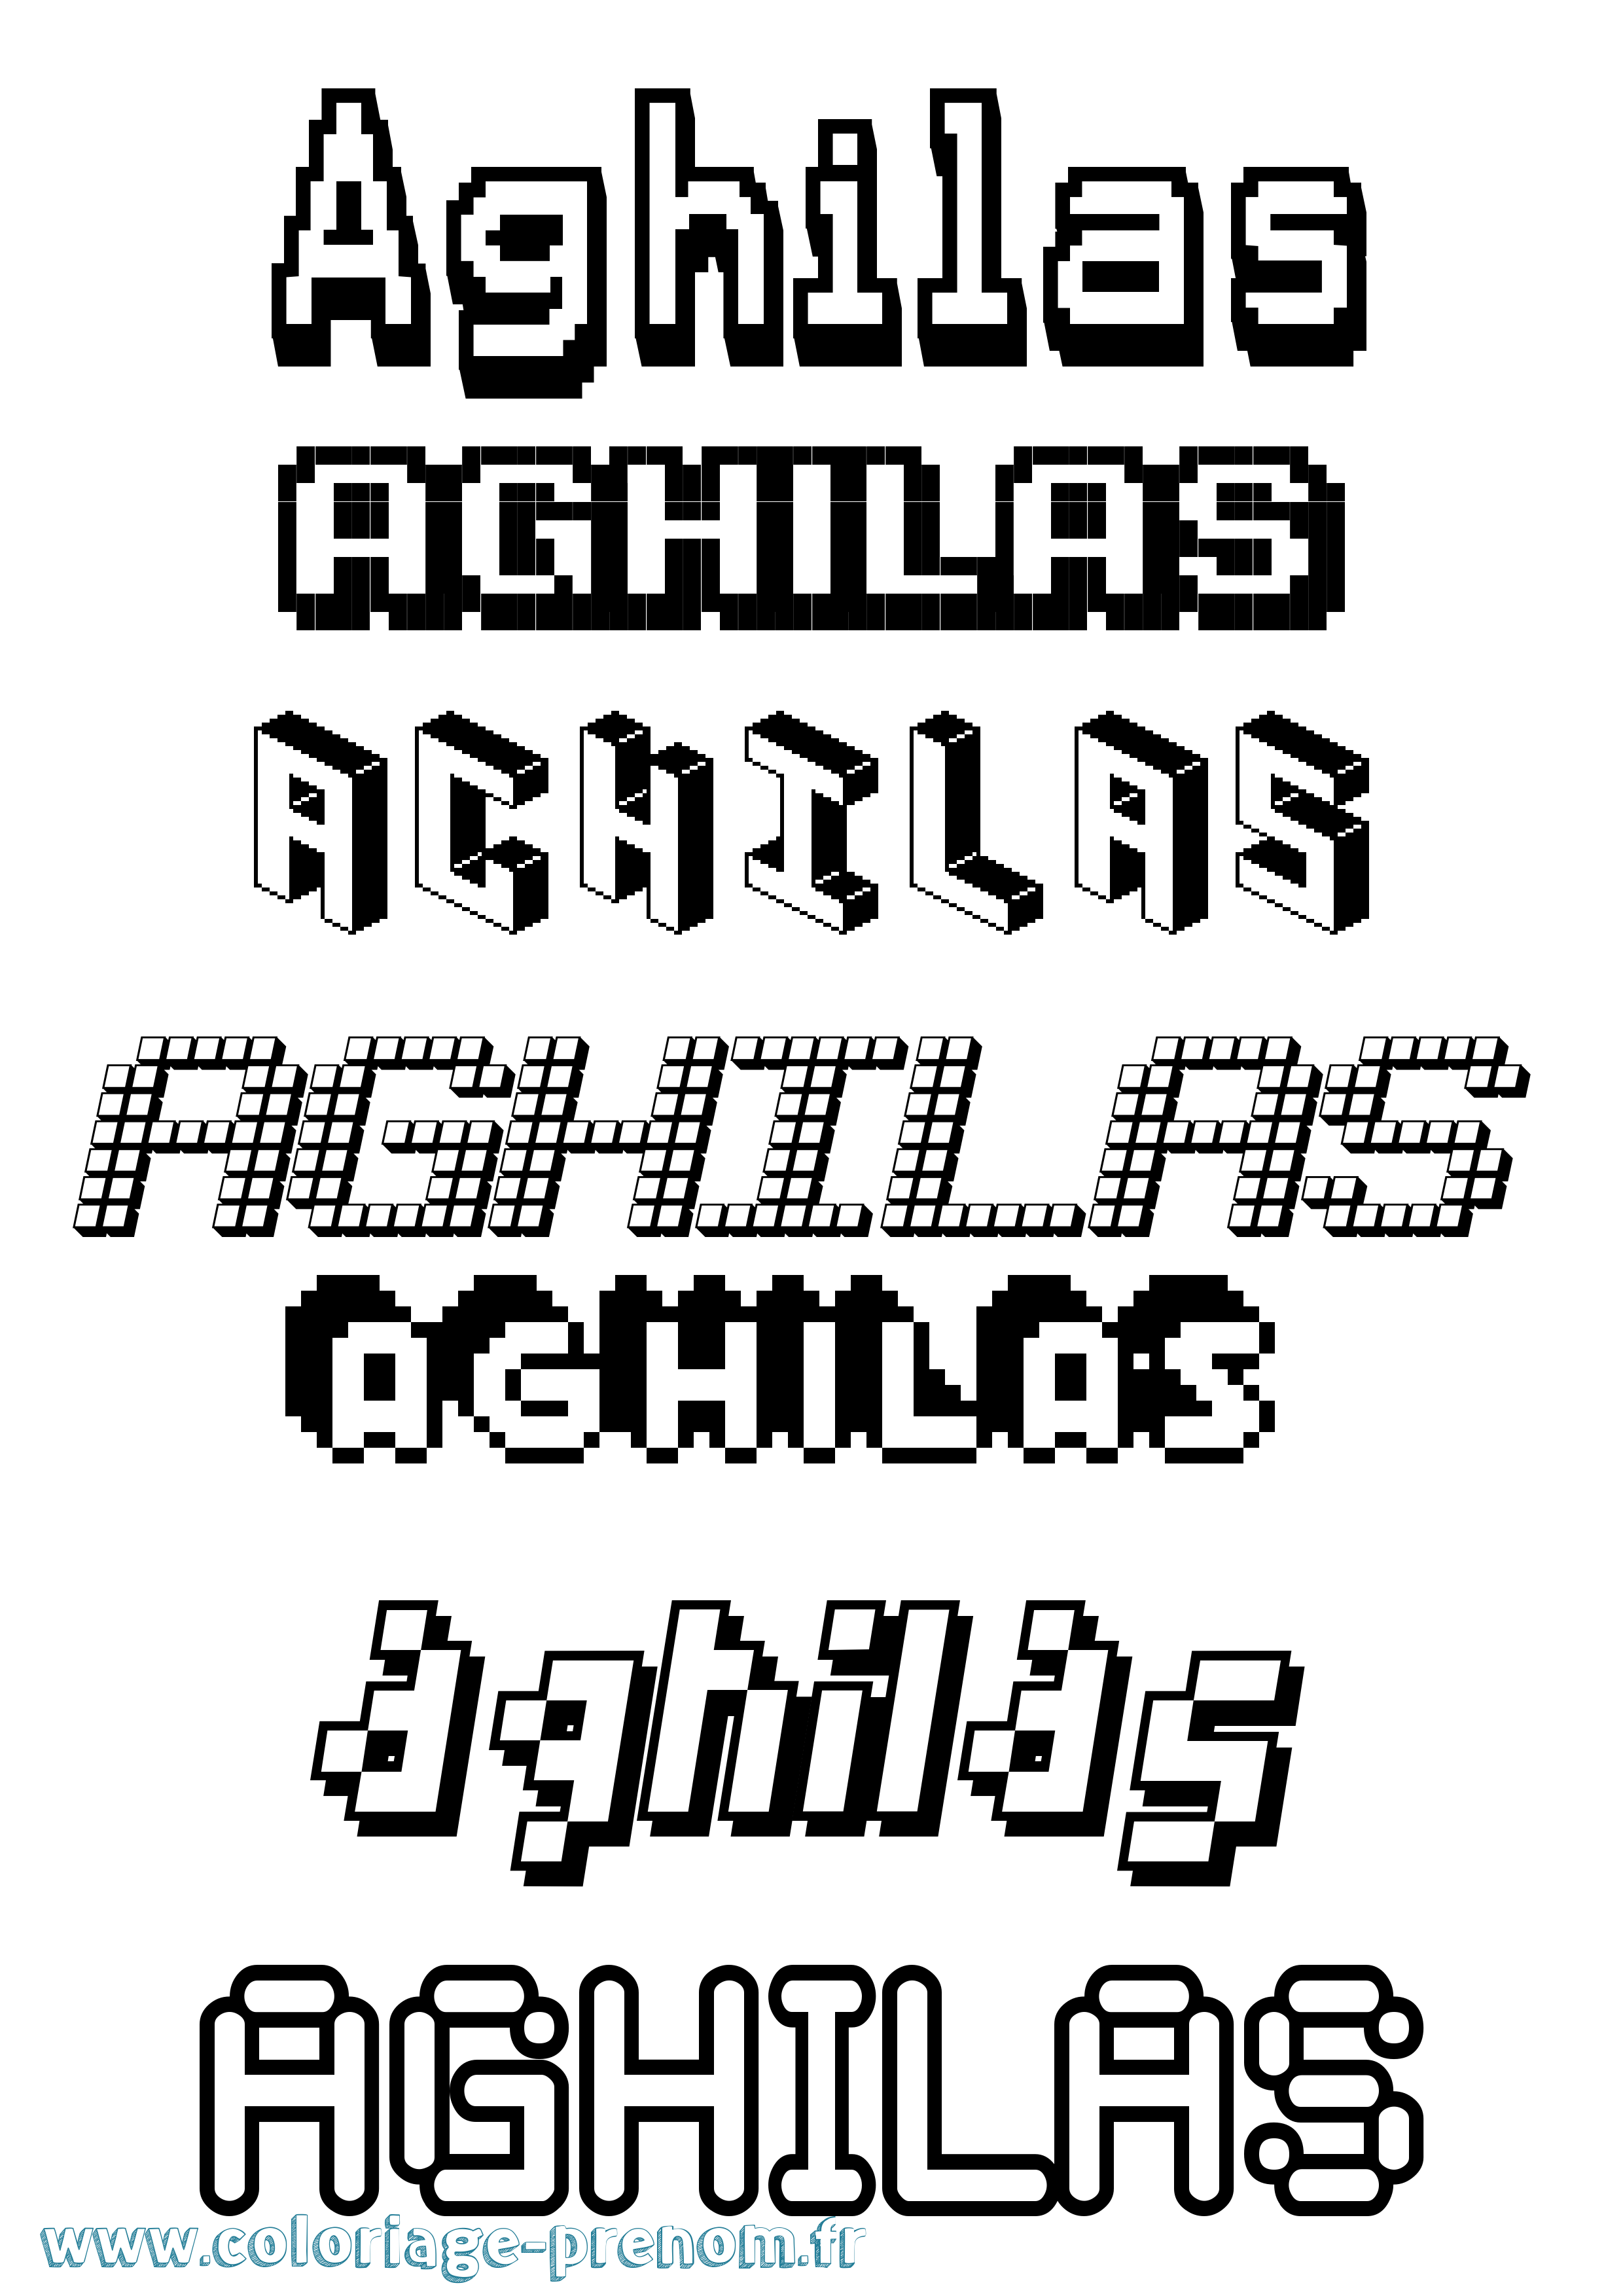 Coloriage prénom Aghilas Pixel